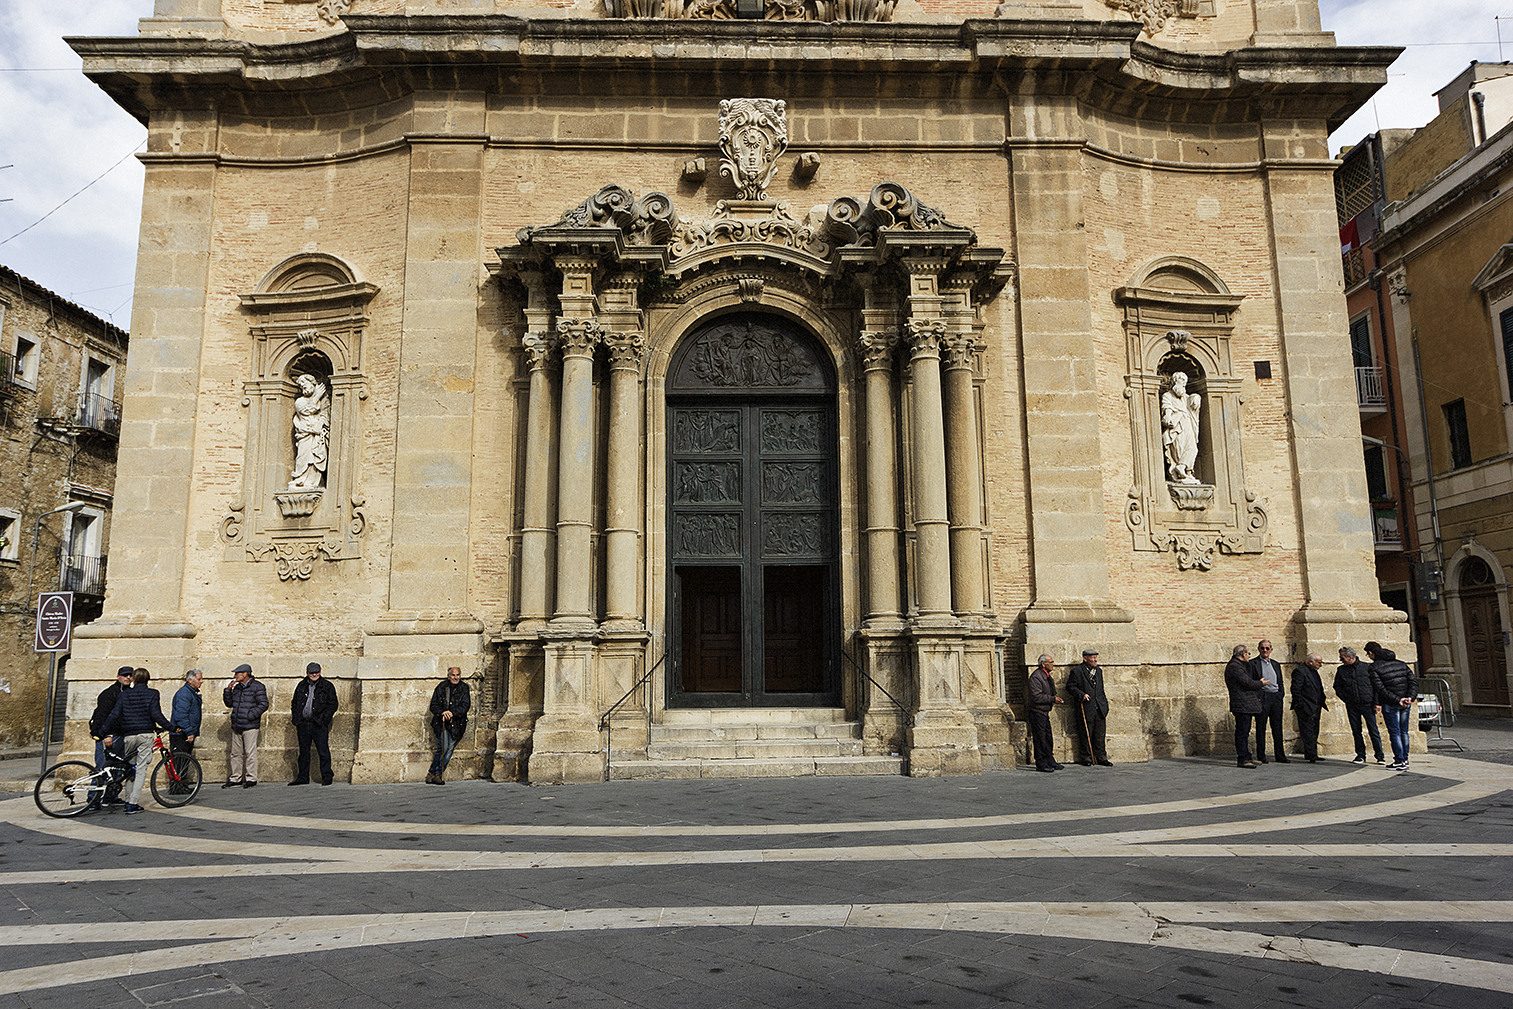  Niscemi (CL), Novembre 2017. Chiesa di Santa Maria D’Itria, presso la piazza principale di Niscemi, piazza Vittorio Emanuele III. © Chiara Faggionato  